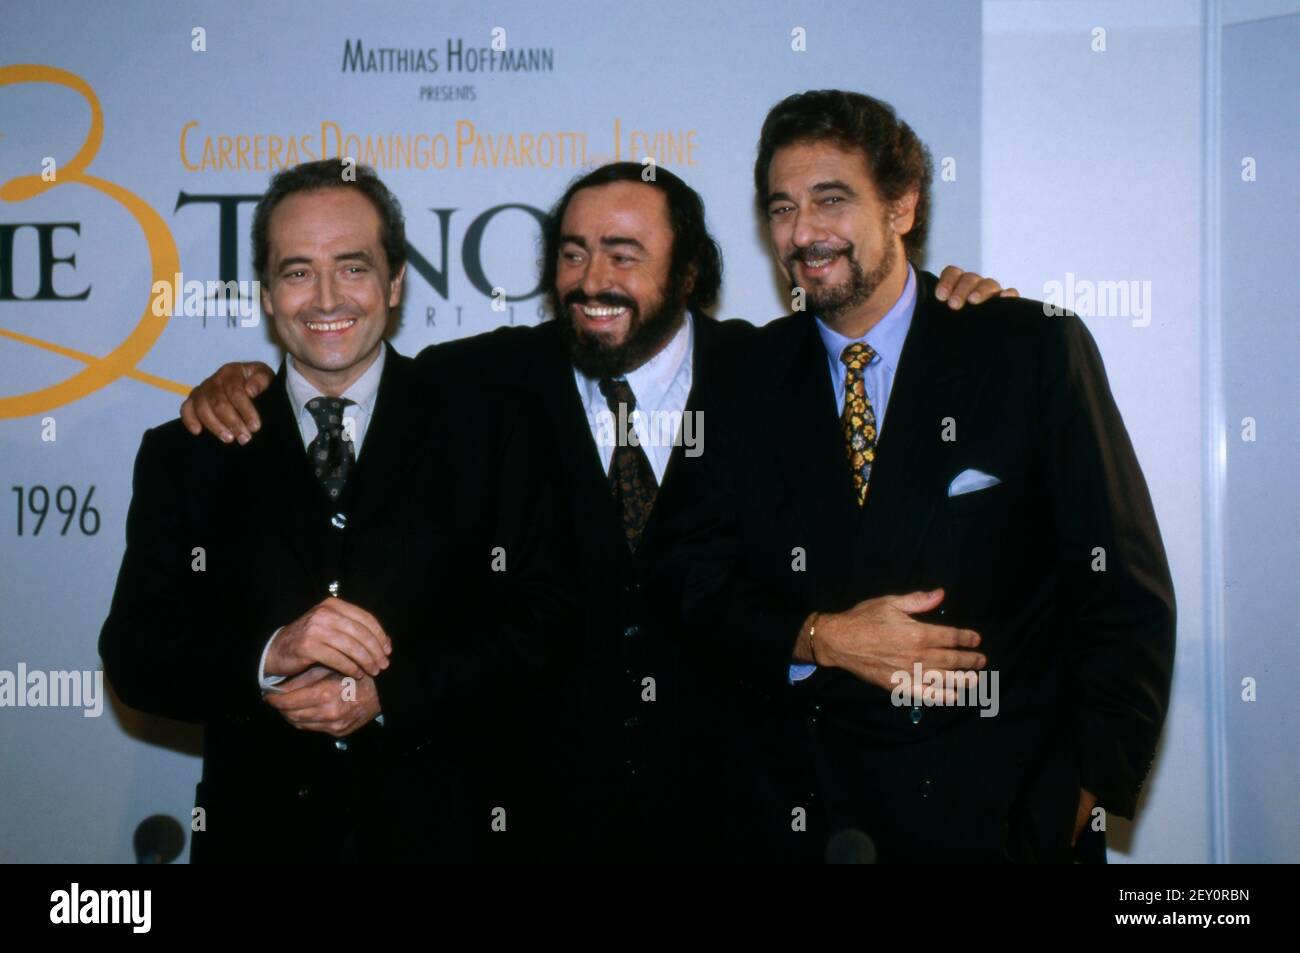 DIE DREI TENÖRE, 1995, Jose Carreras, Luciano Pavarotti, Placido Domingo. THE THREE TENORS, 1995, Spanish Tenor Jose Carreras, Italian Tenor Luciano Pavarotti and Spanish Tenor Placido Domingo. Stock Photo